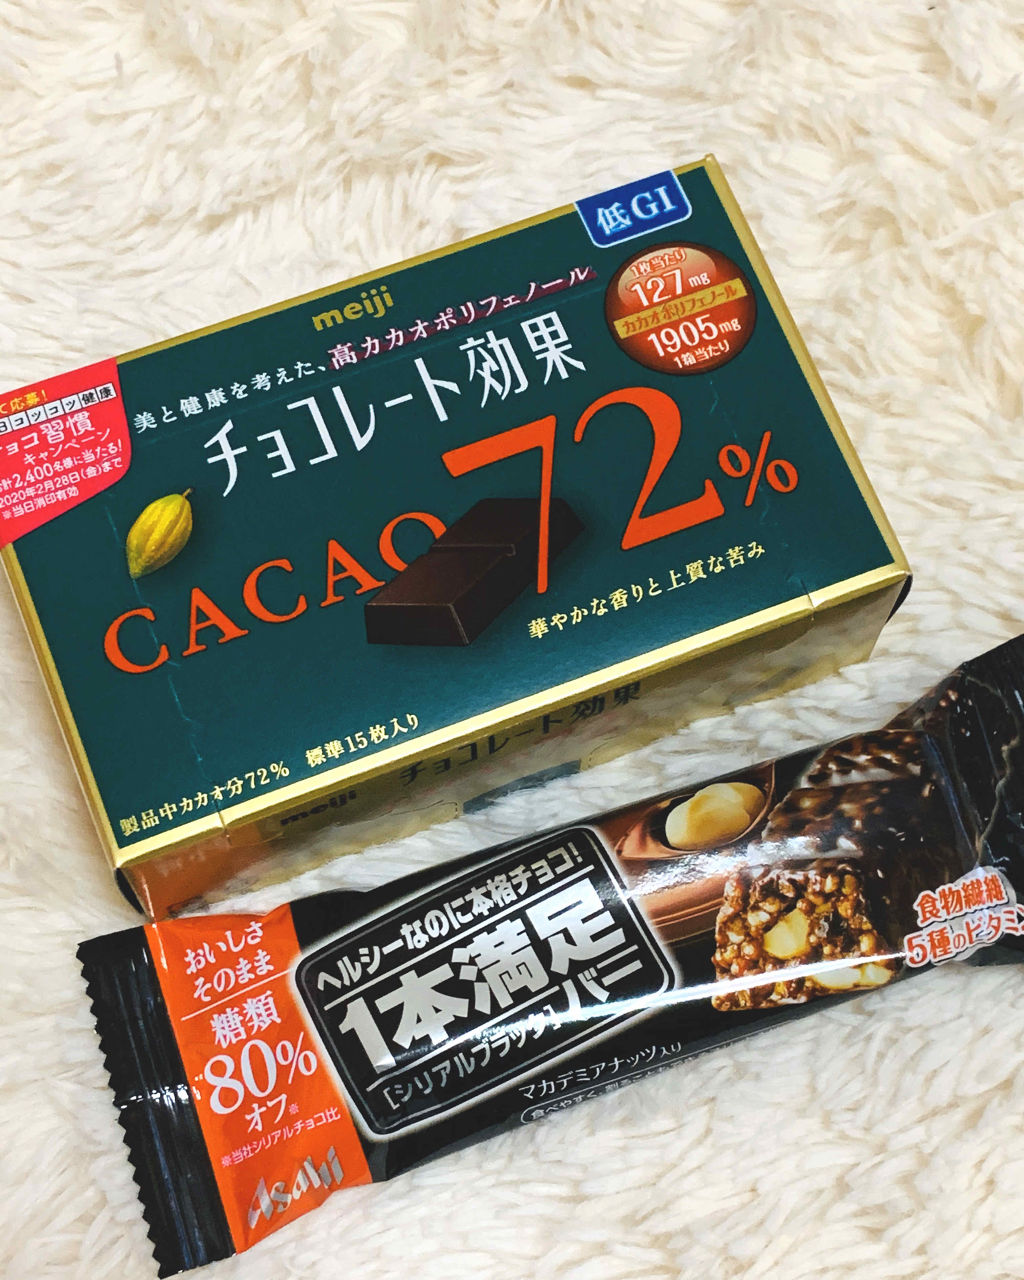 チョコレート効果 Cacao72 明治の口コミ ダイエットチョコレート ダイエット中でも By ひろろん 混合肌 Lips